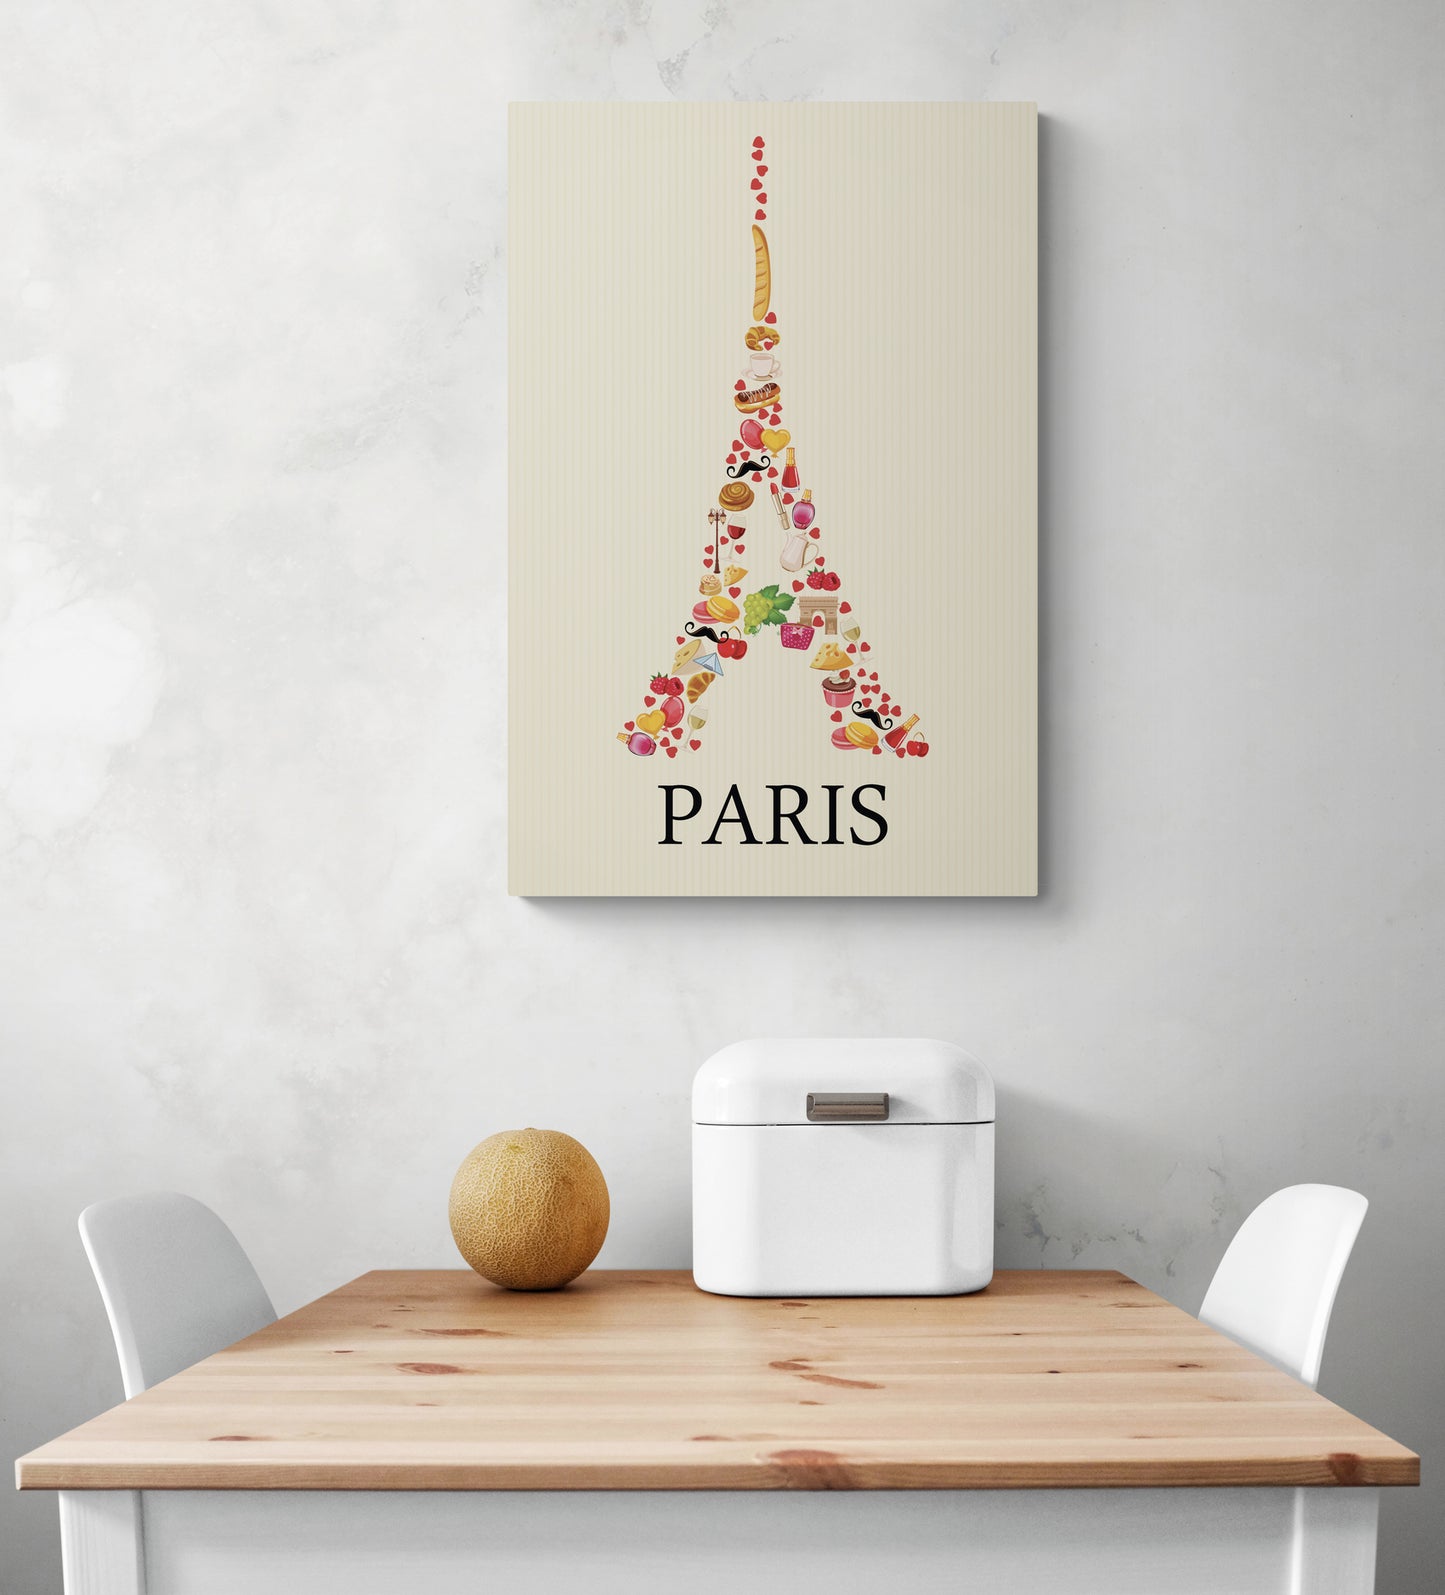 Sur un mur blanc d'une cuisine, un tableau aux couleurs douces représentant une image de la Tour Eiffel est accroché. La photo montre également une table en bois et deux chaises blanches qui semblent être disposées de manière à créer un espace accueillant.